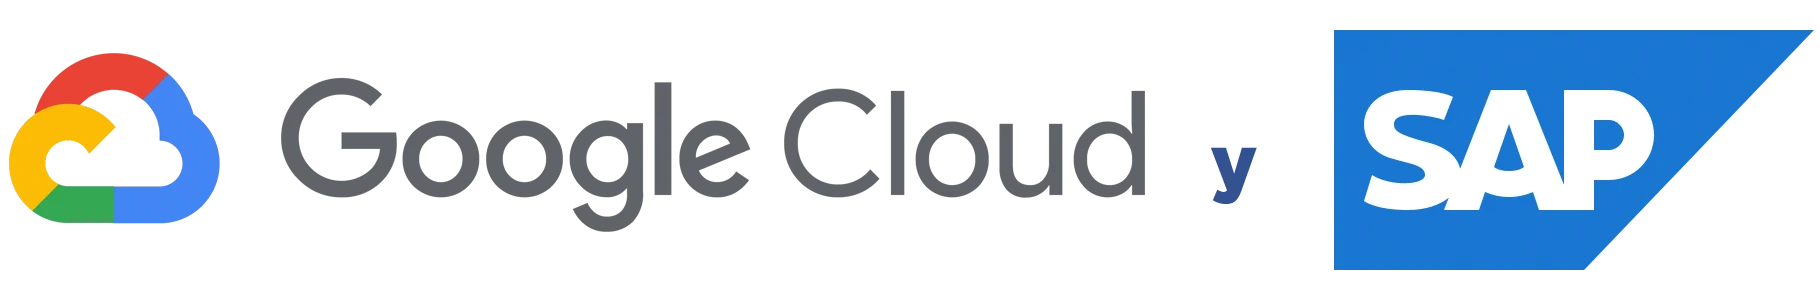 abside SAP y Google  cloud partner